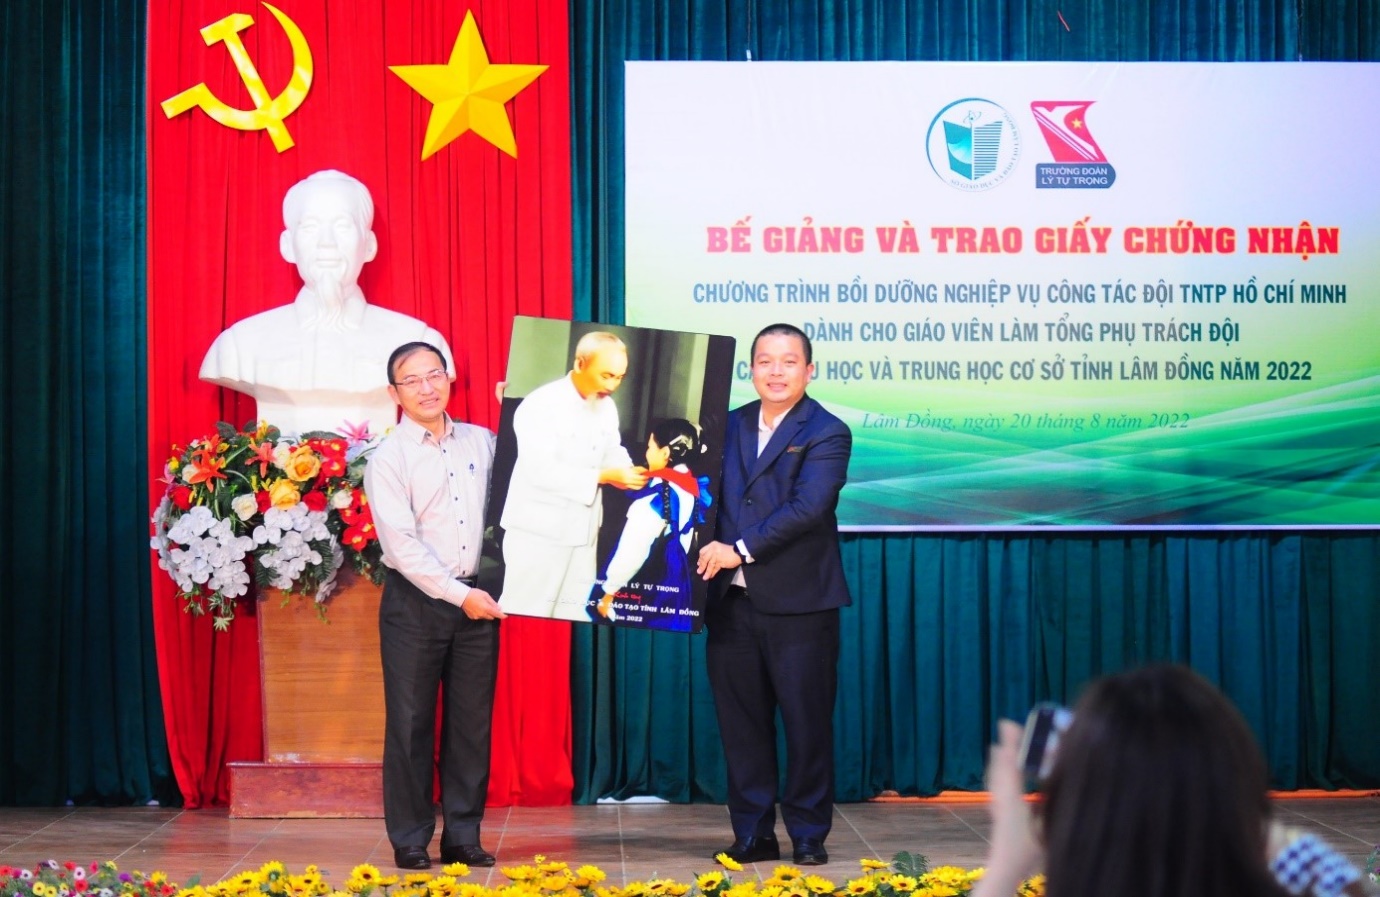 115 giáo viên tỉnh Lâm Đồng hoàn thành Chương trình Bồi dưỡng nghiệp vụ công tác Đội TNTP Hồ Chí Minh dành cho giáo viên Tổng phụ trách Đội cấp Tiểu học và cấp Trung học cơ sở năm 2022